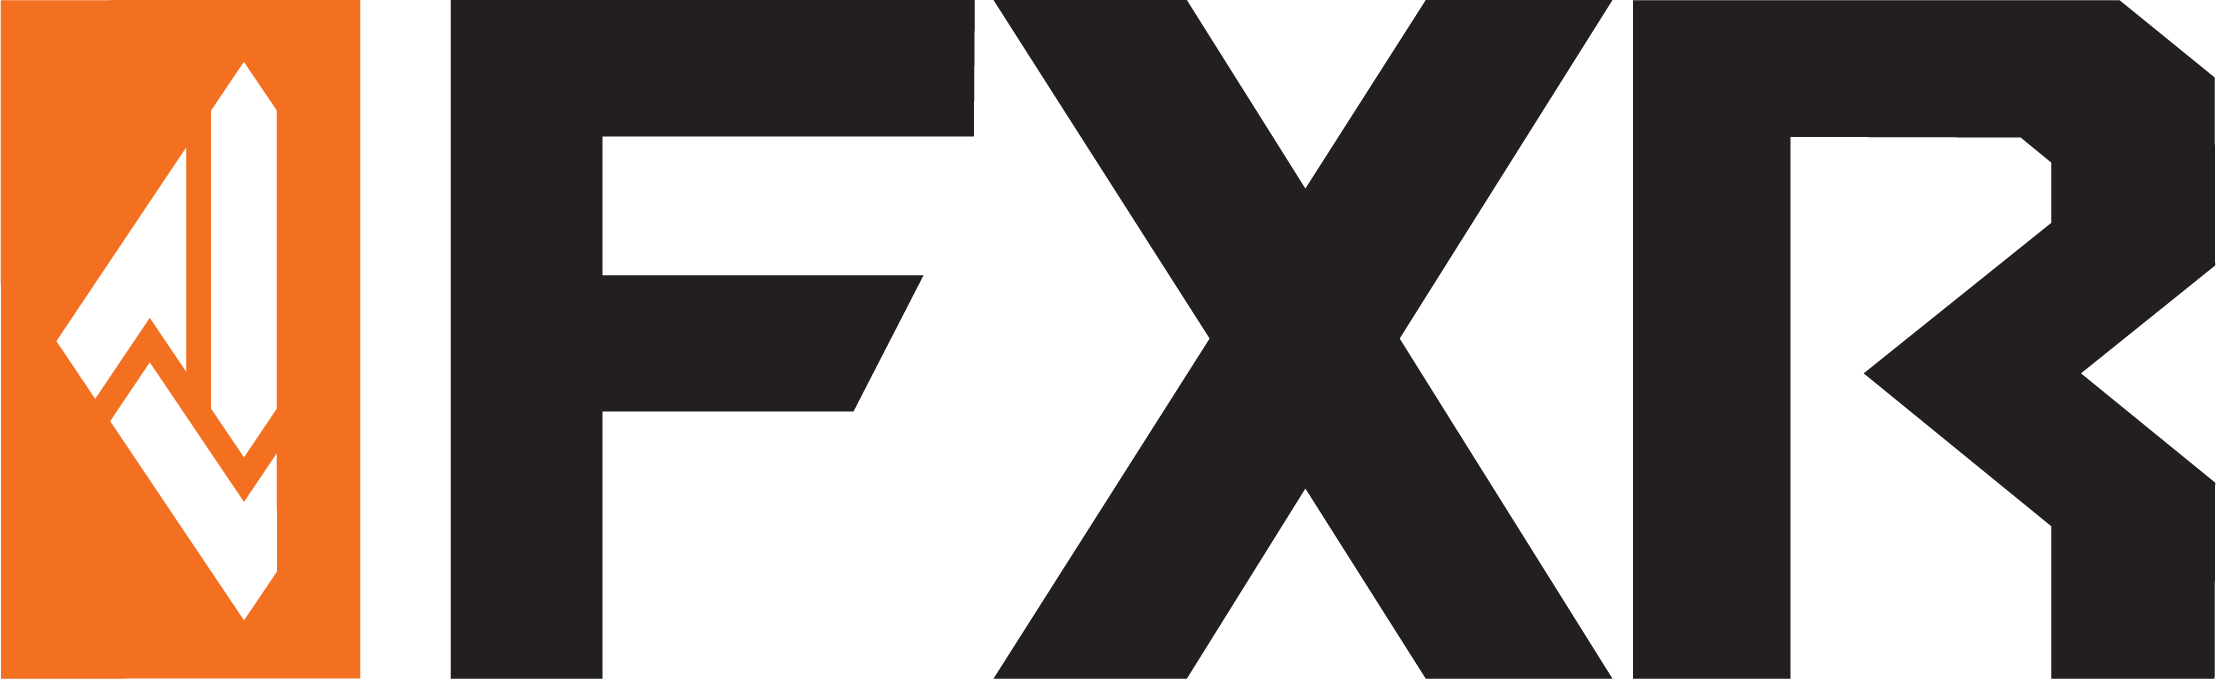 FXR Logo -.png